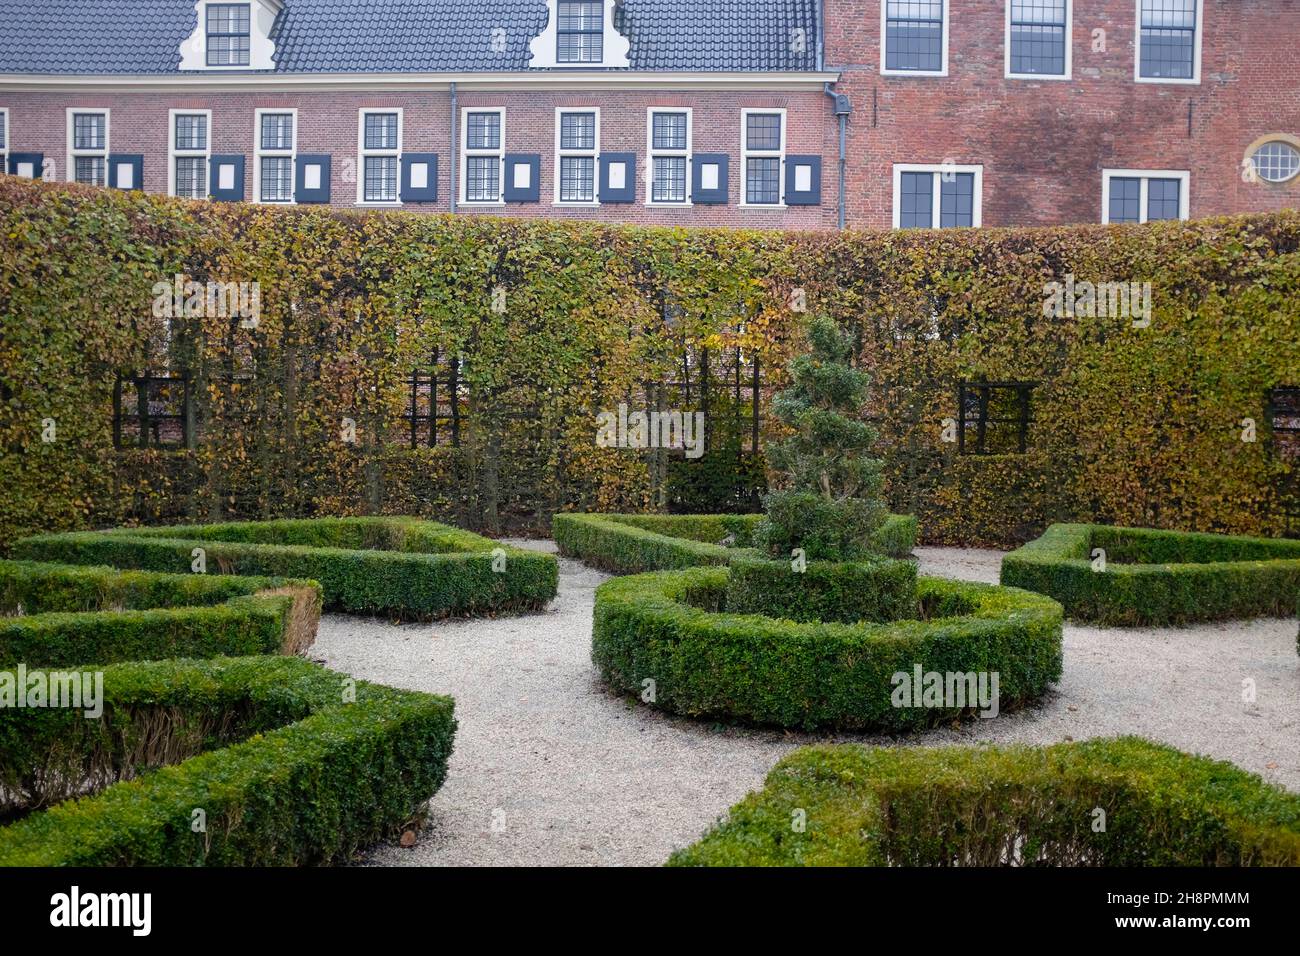 Prinsenhof & Prinsentuin (cour et jardins du Prince datant du 17th siècle) dans le centre historique de Groningen, aux pays-Bas. Banque D'Images